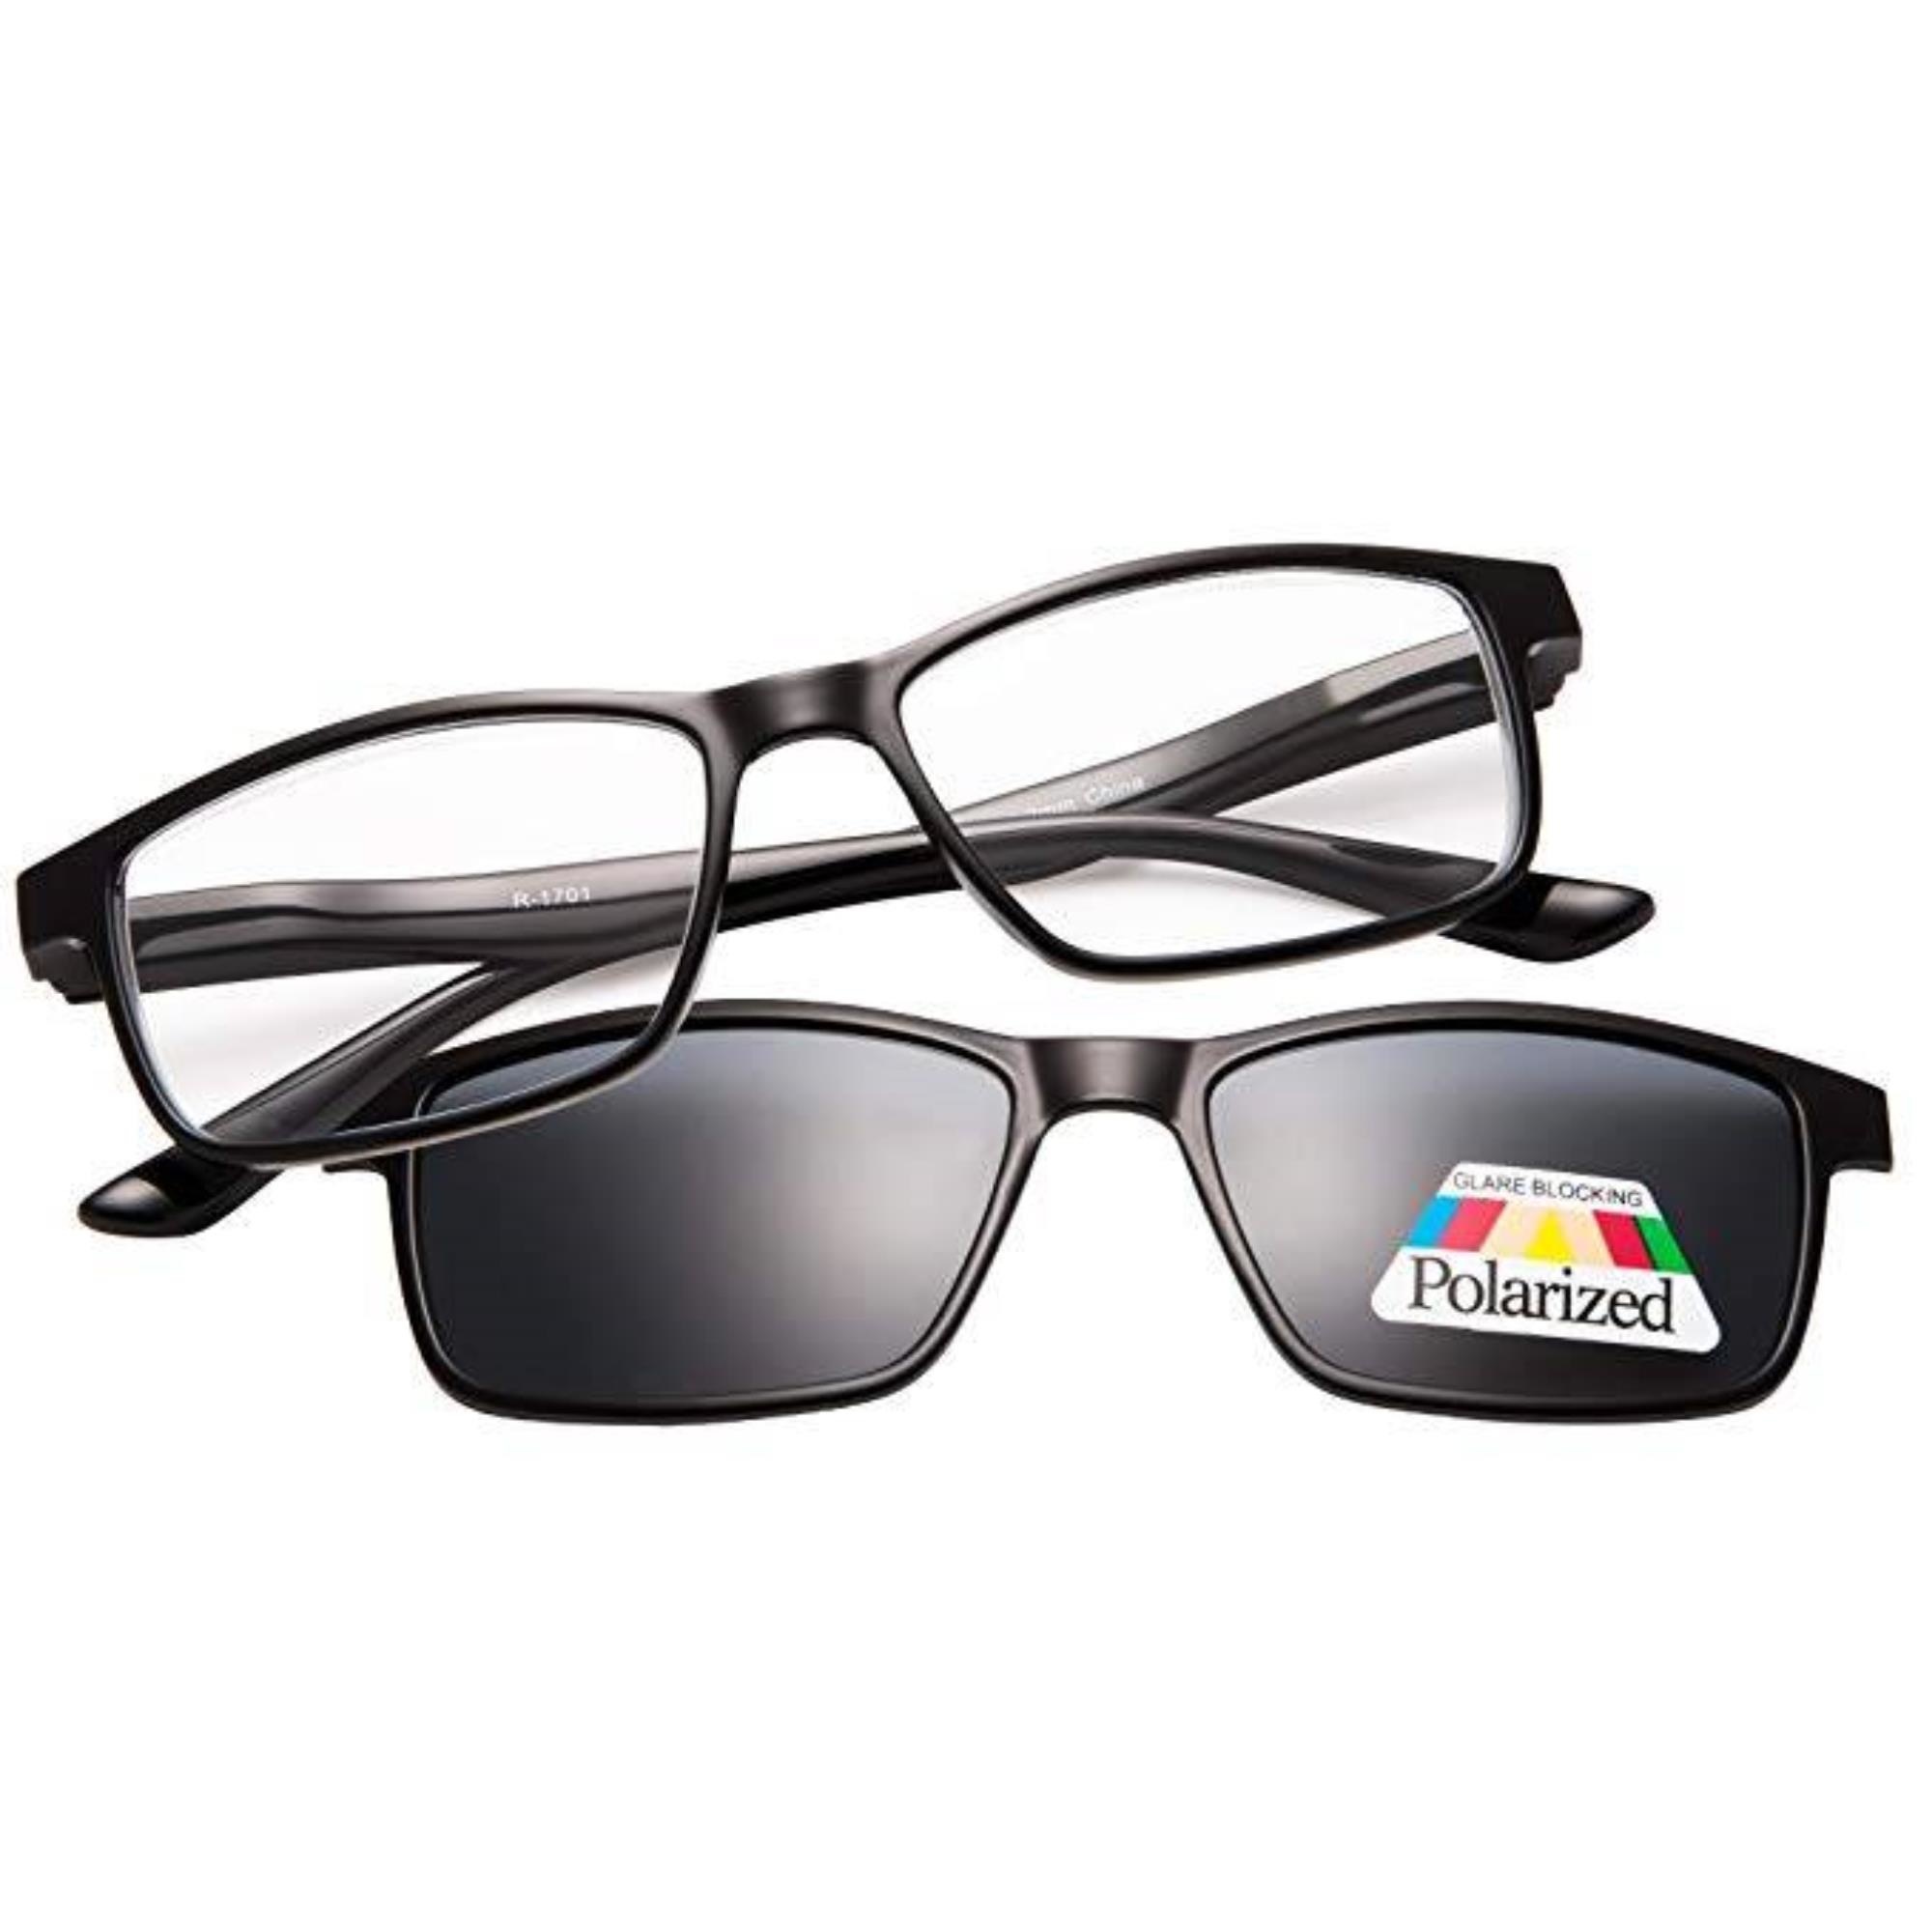 woonadres partij duif Benson Leesbril met magneet zonnebril - Zwart - Sterkte +2.50 kopen? -  2Cheap